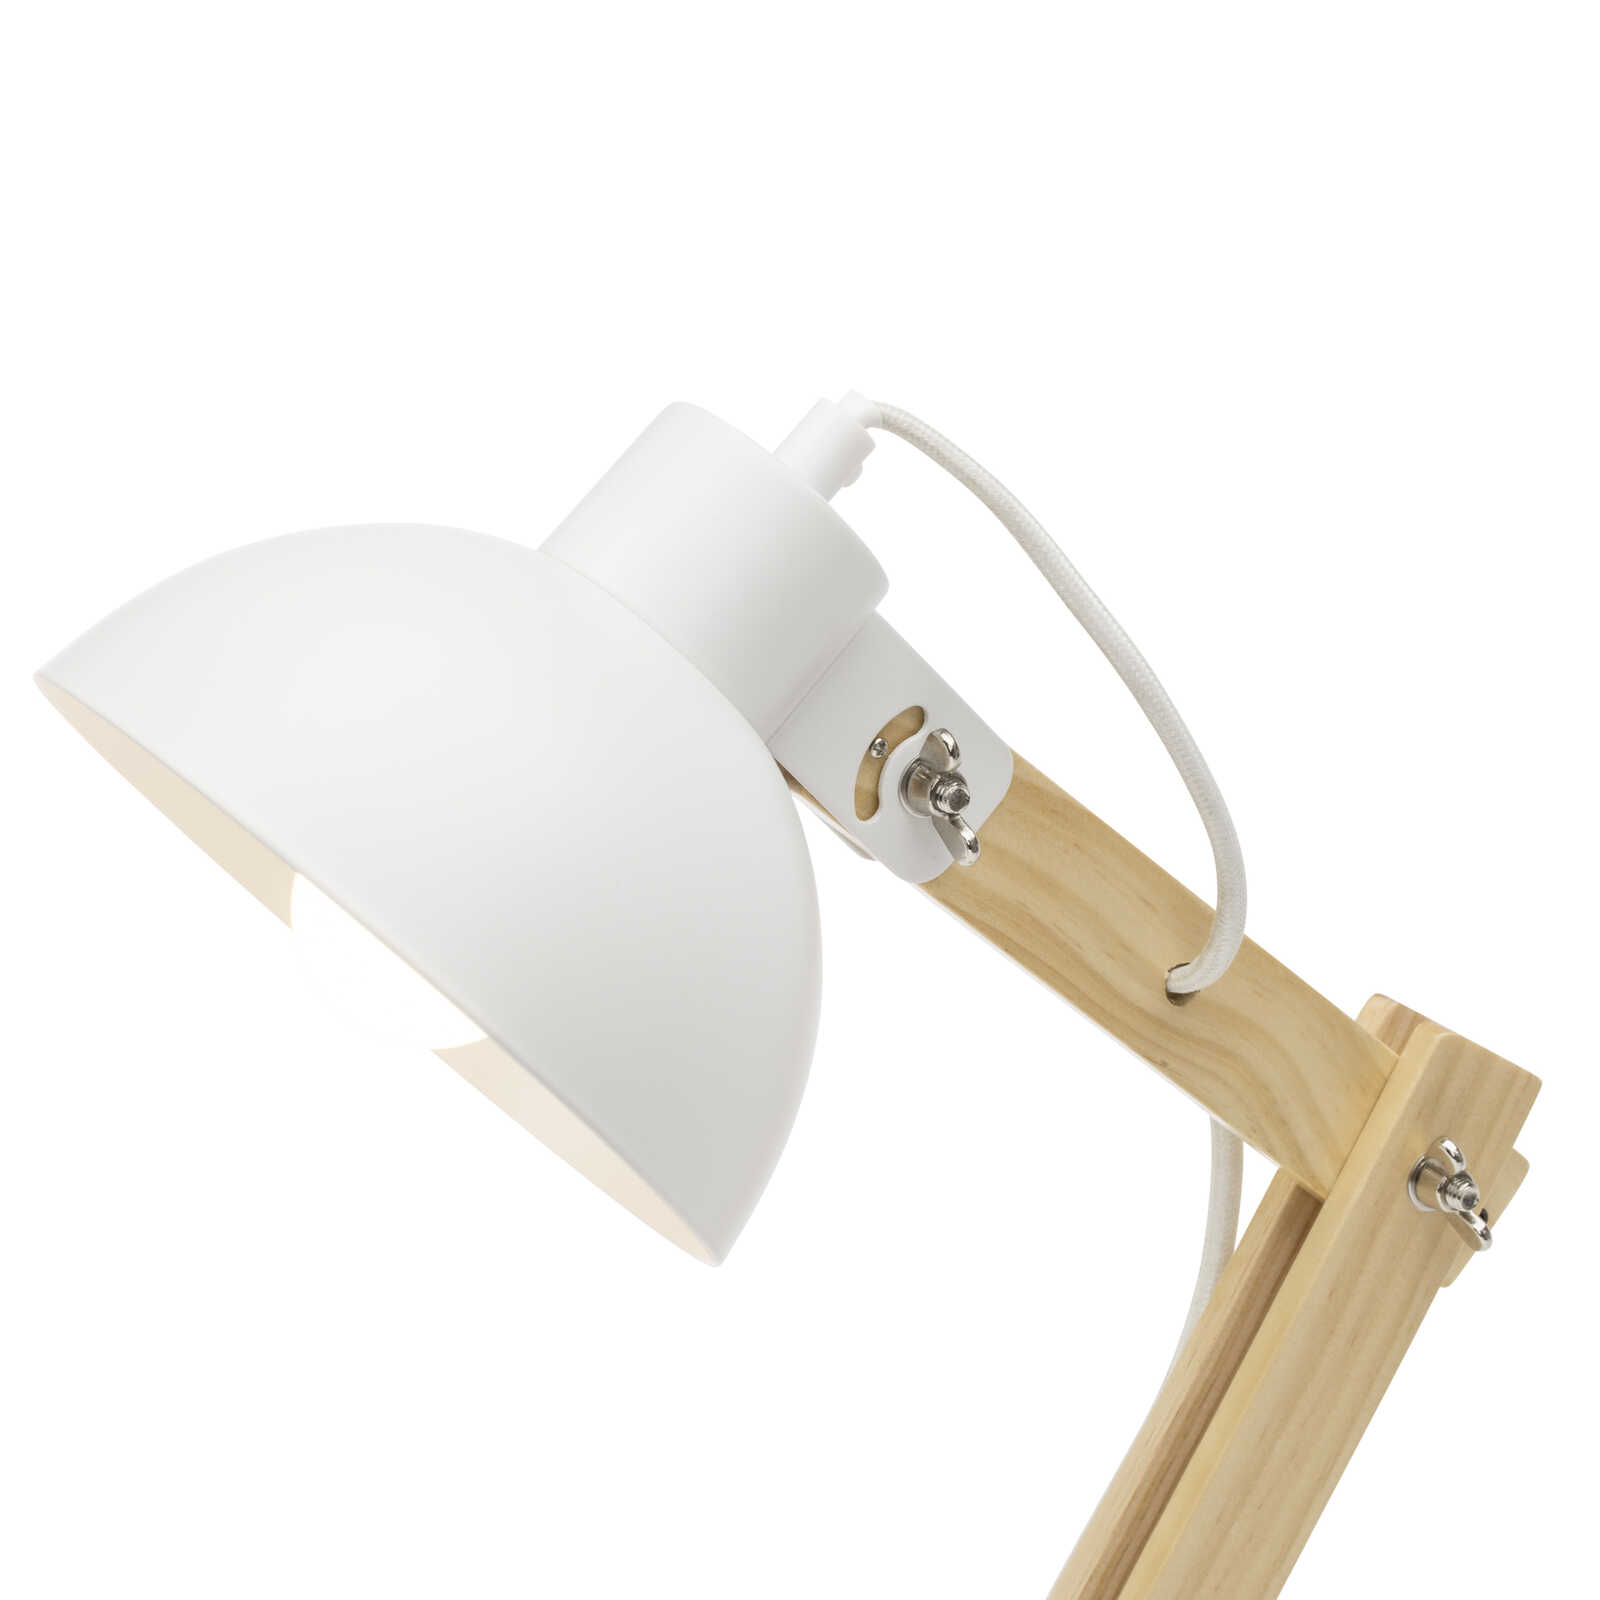             Wooden table lamp - Lisa 1 - White
        